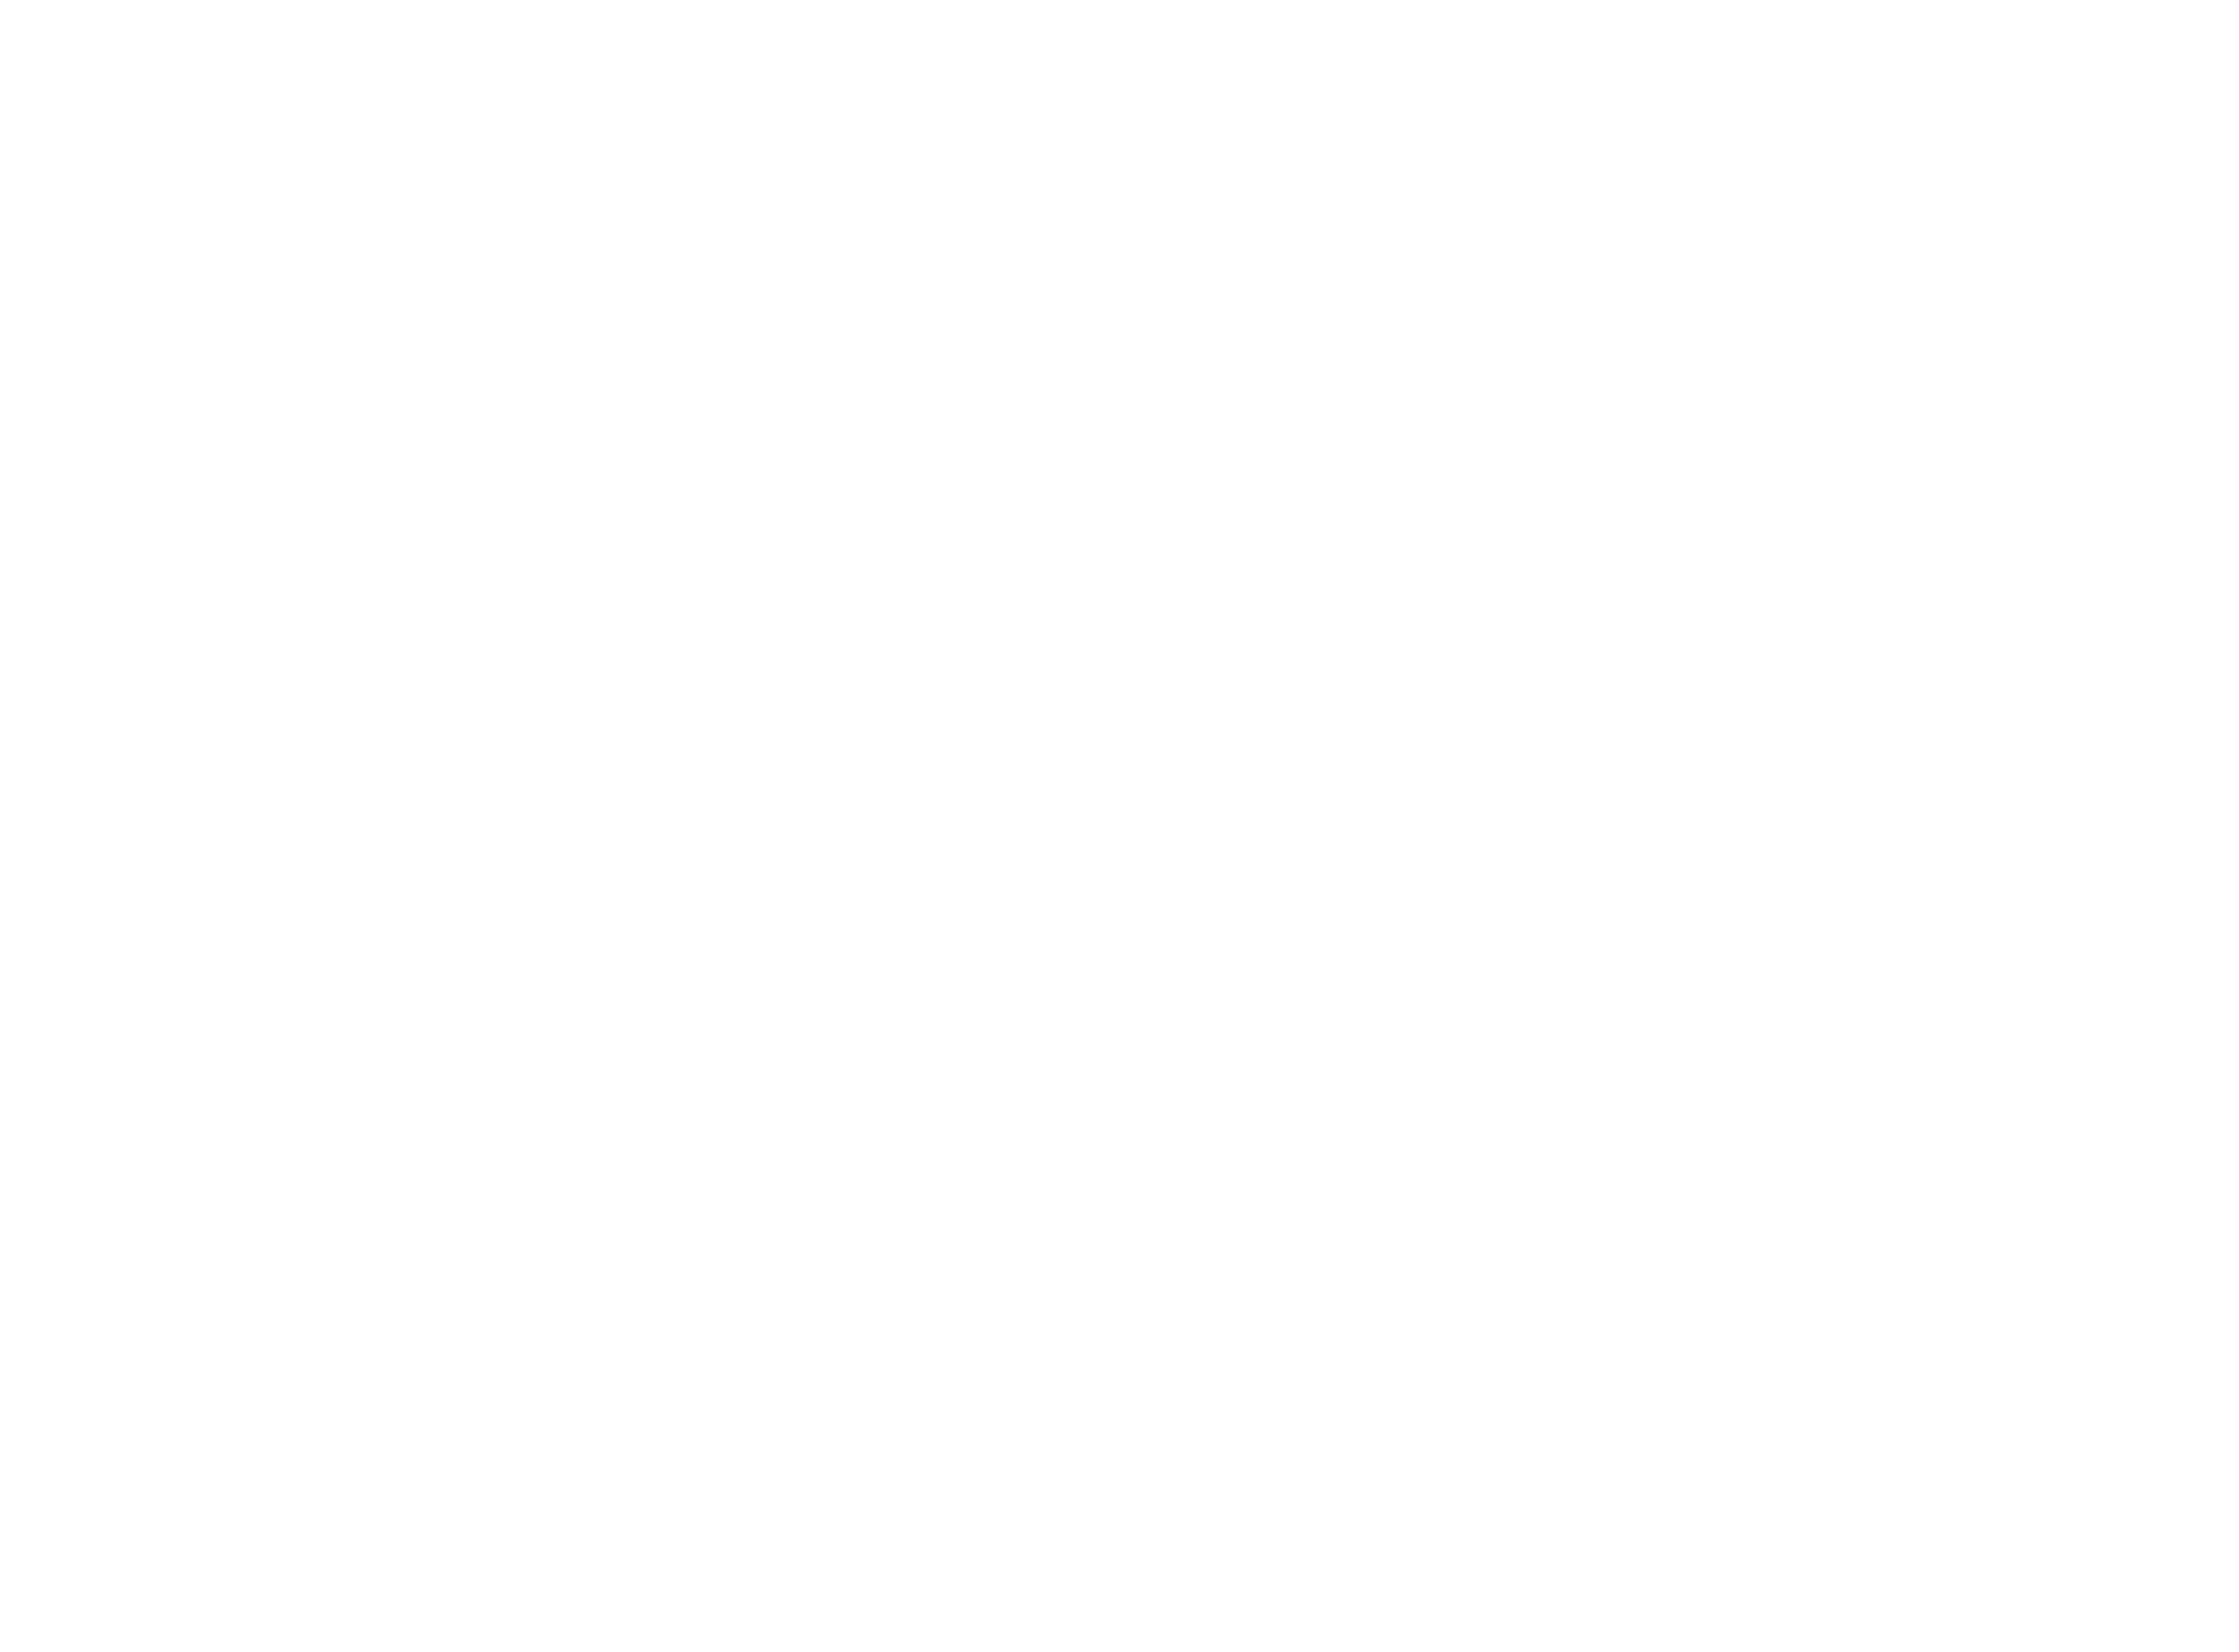 A Csalóka szivárvány című színdarab fotóspróbája a József Attila színházban, a képen Lippai László és Rékasi Károly 2014-ben / Fotó: Ras archívum